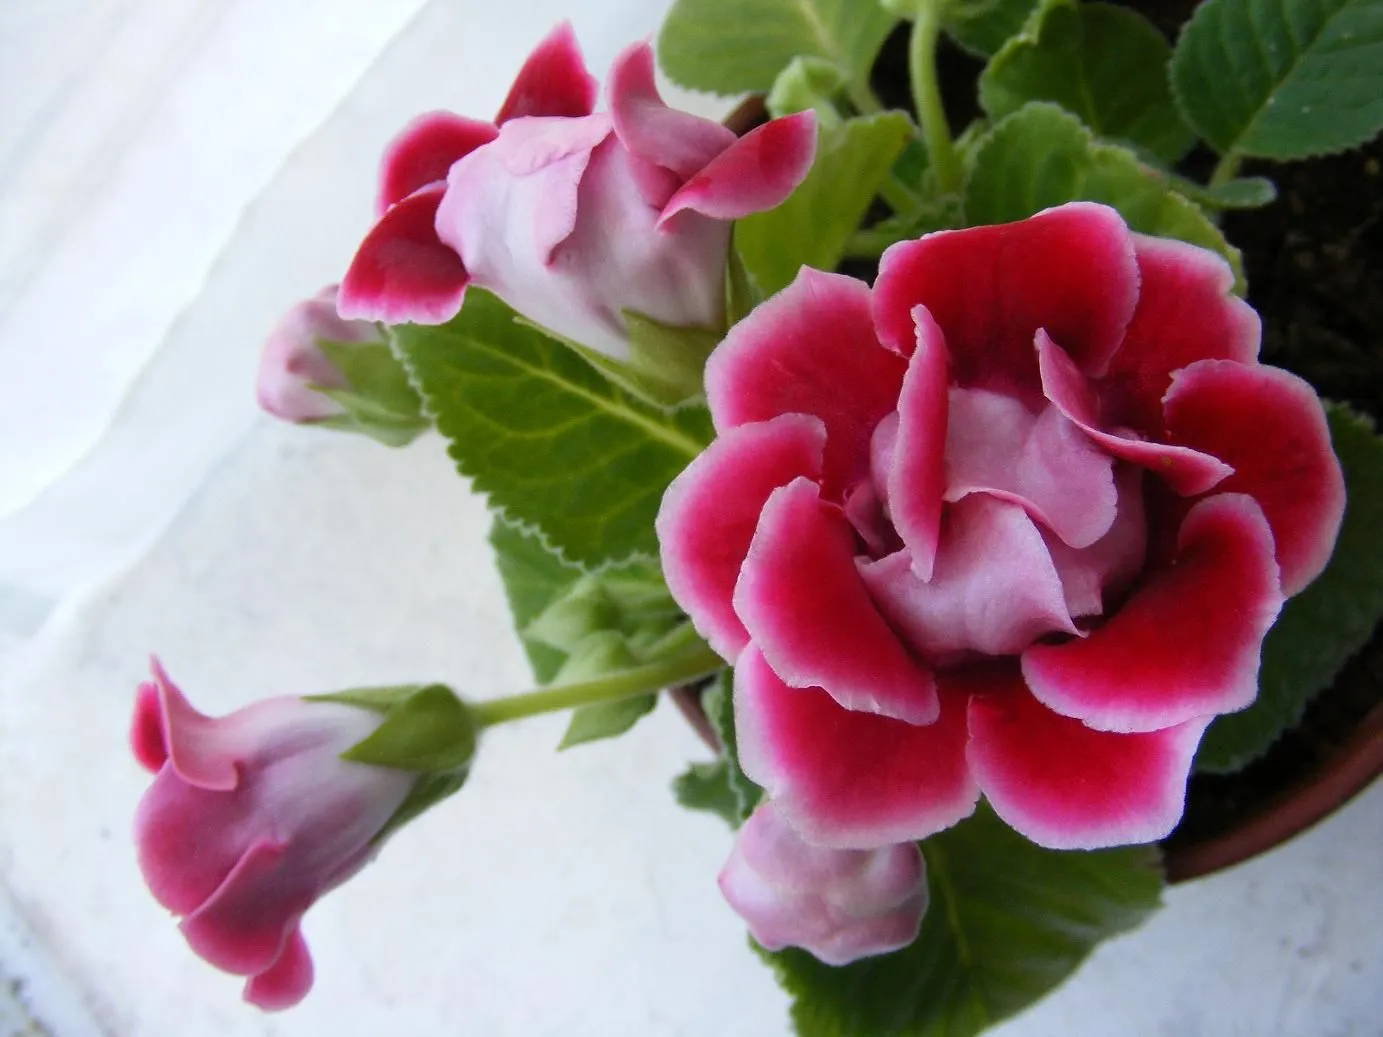  ... FOTO (Hojas moradas, flores rosas y muy frágil) - Foro de InfoJardín